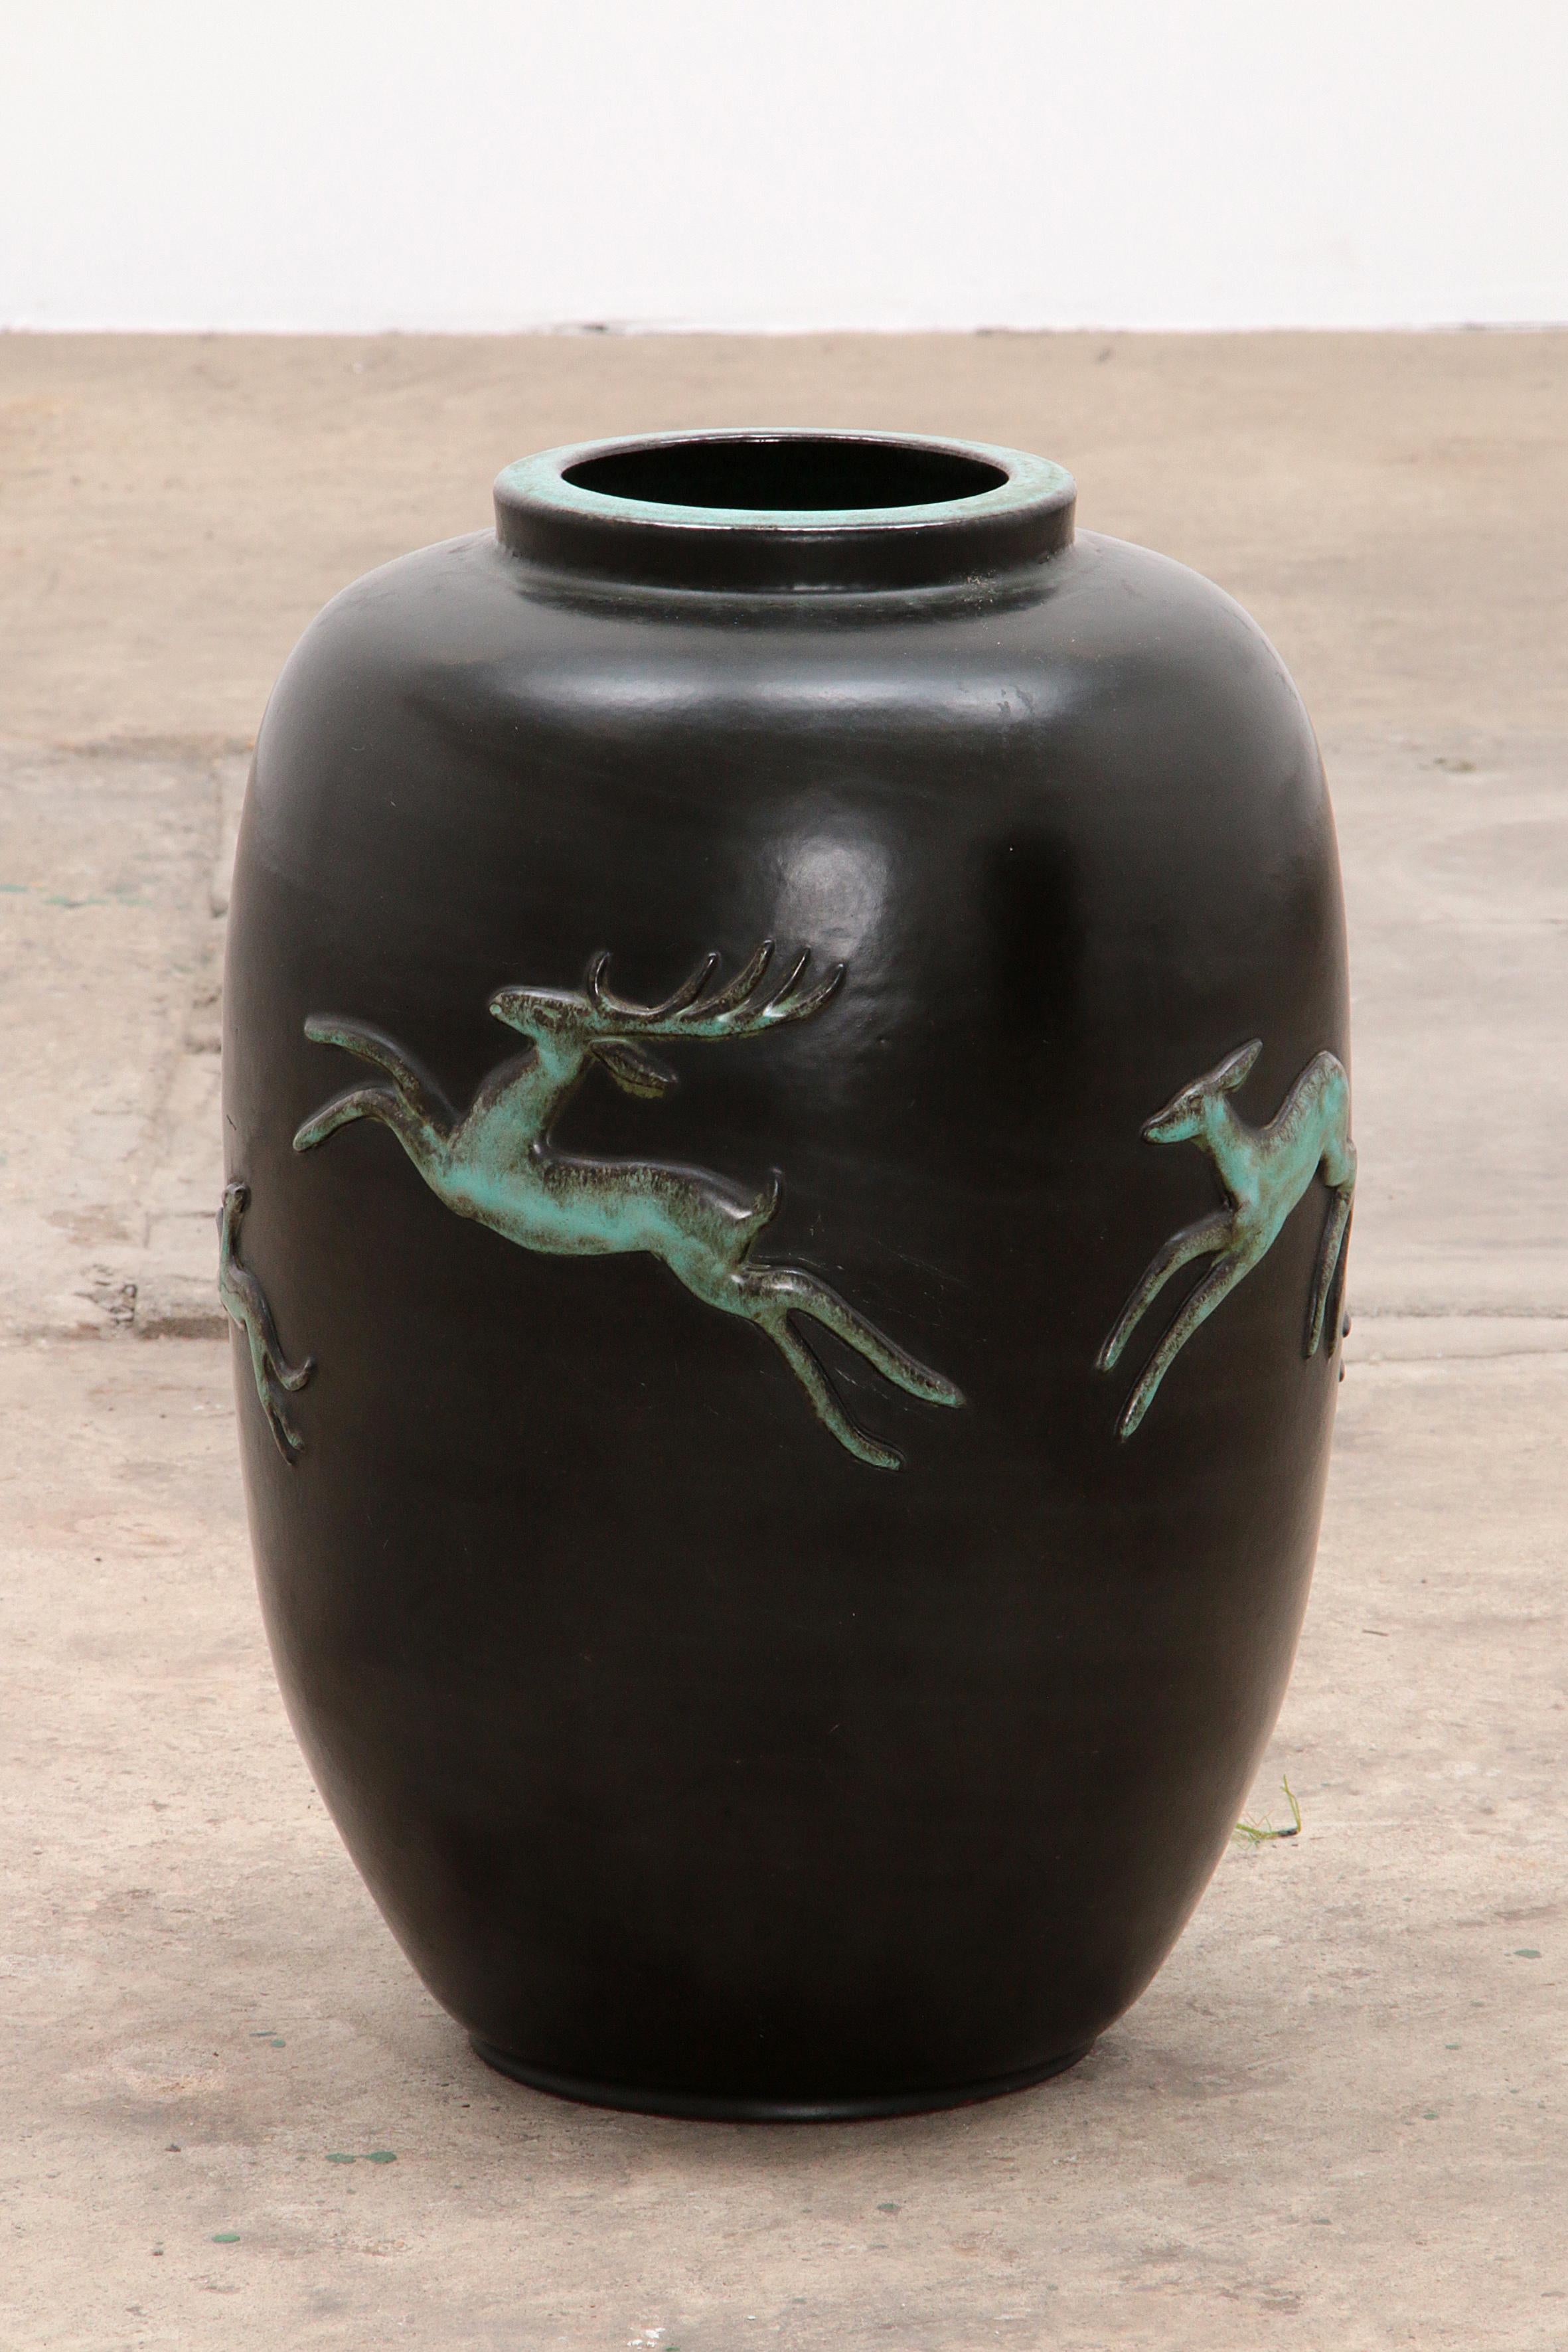 Grand vase en terre cuite émaillée noir-vert des années 1950 avec un cerf en bas-relief, fabriqué par Ugo Zaccagnini & Son.s. Belle pièce unique en très bon état.

Ce magnifique vase est fait à la main et émaillé de plusieurs beaux cerfs sauteurs